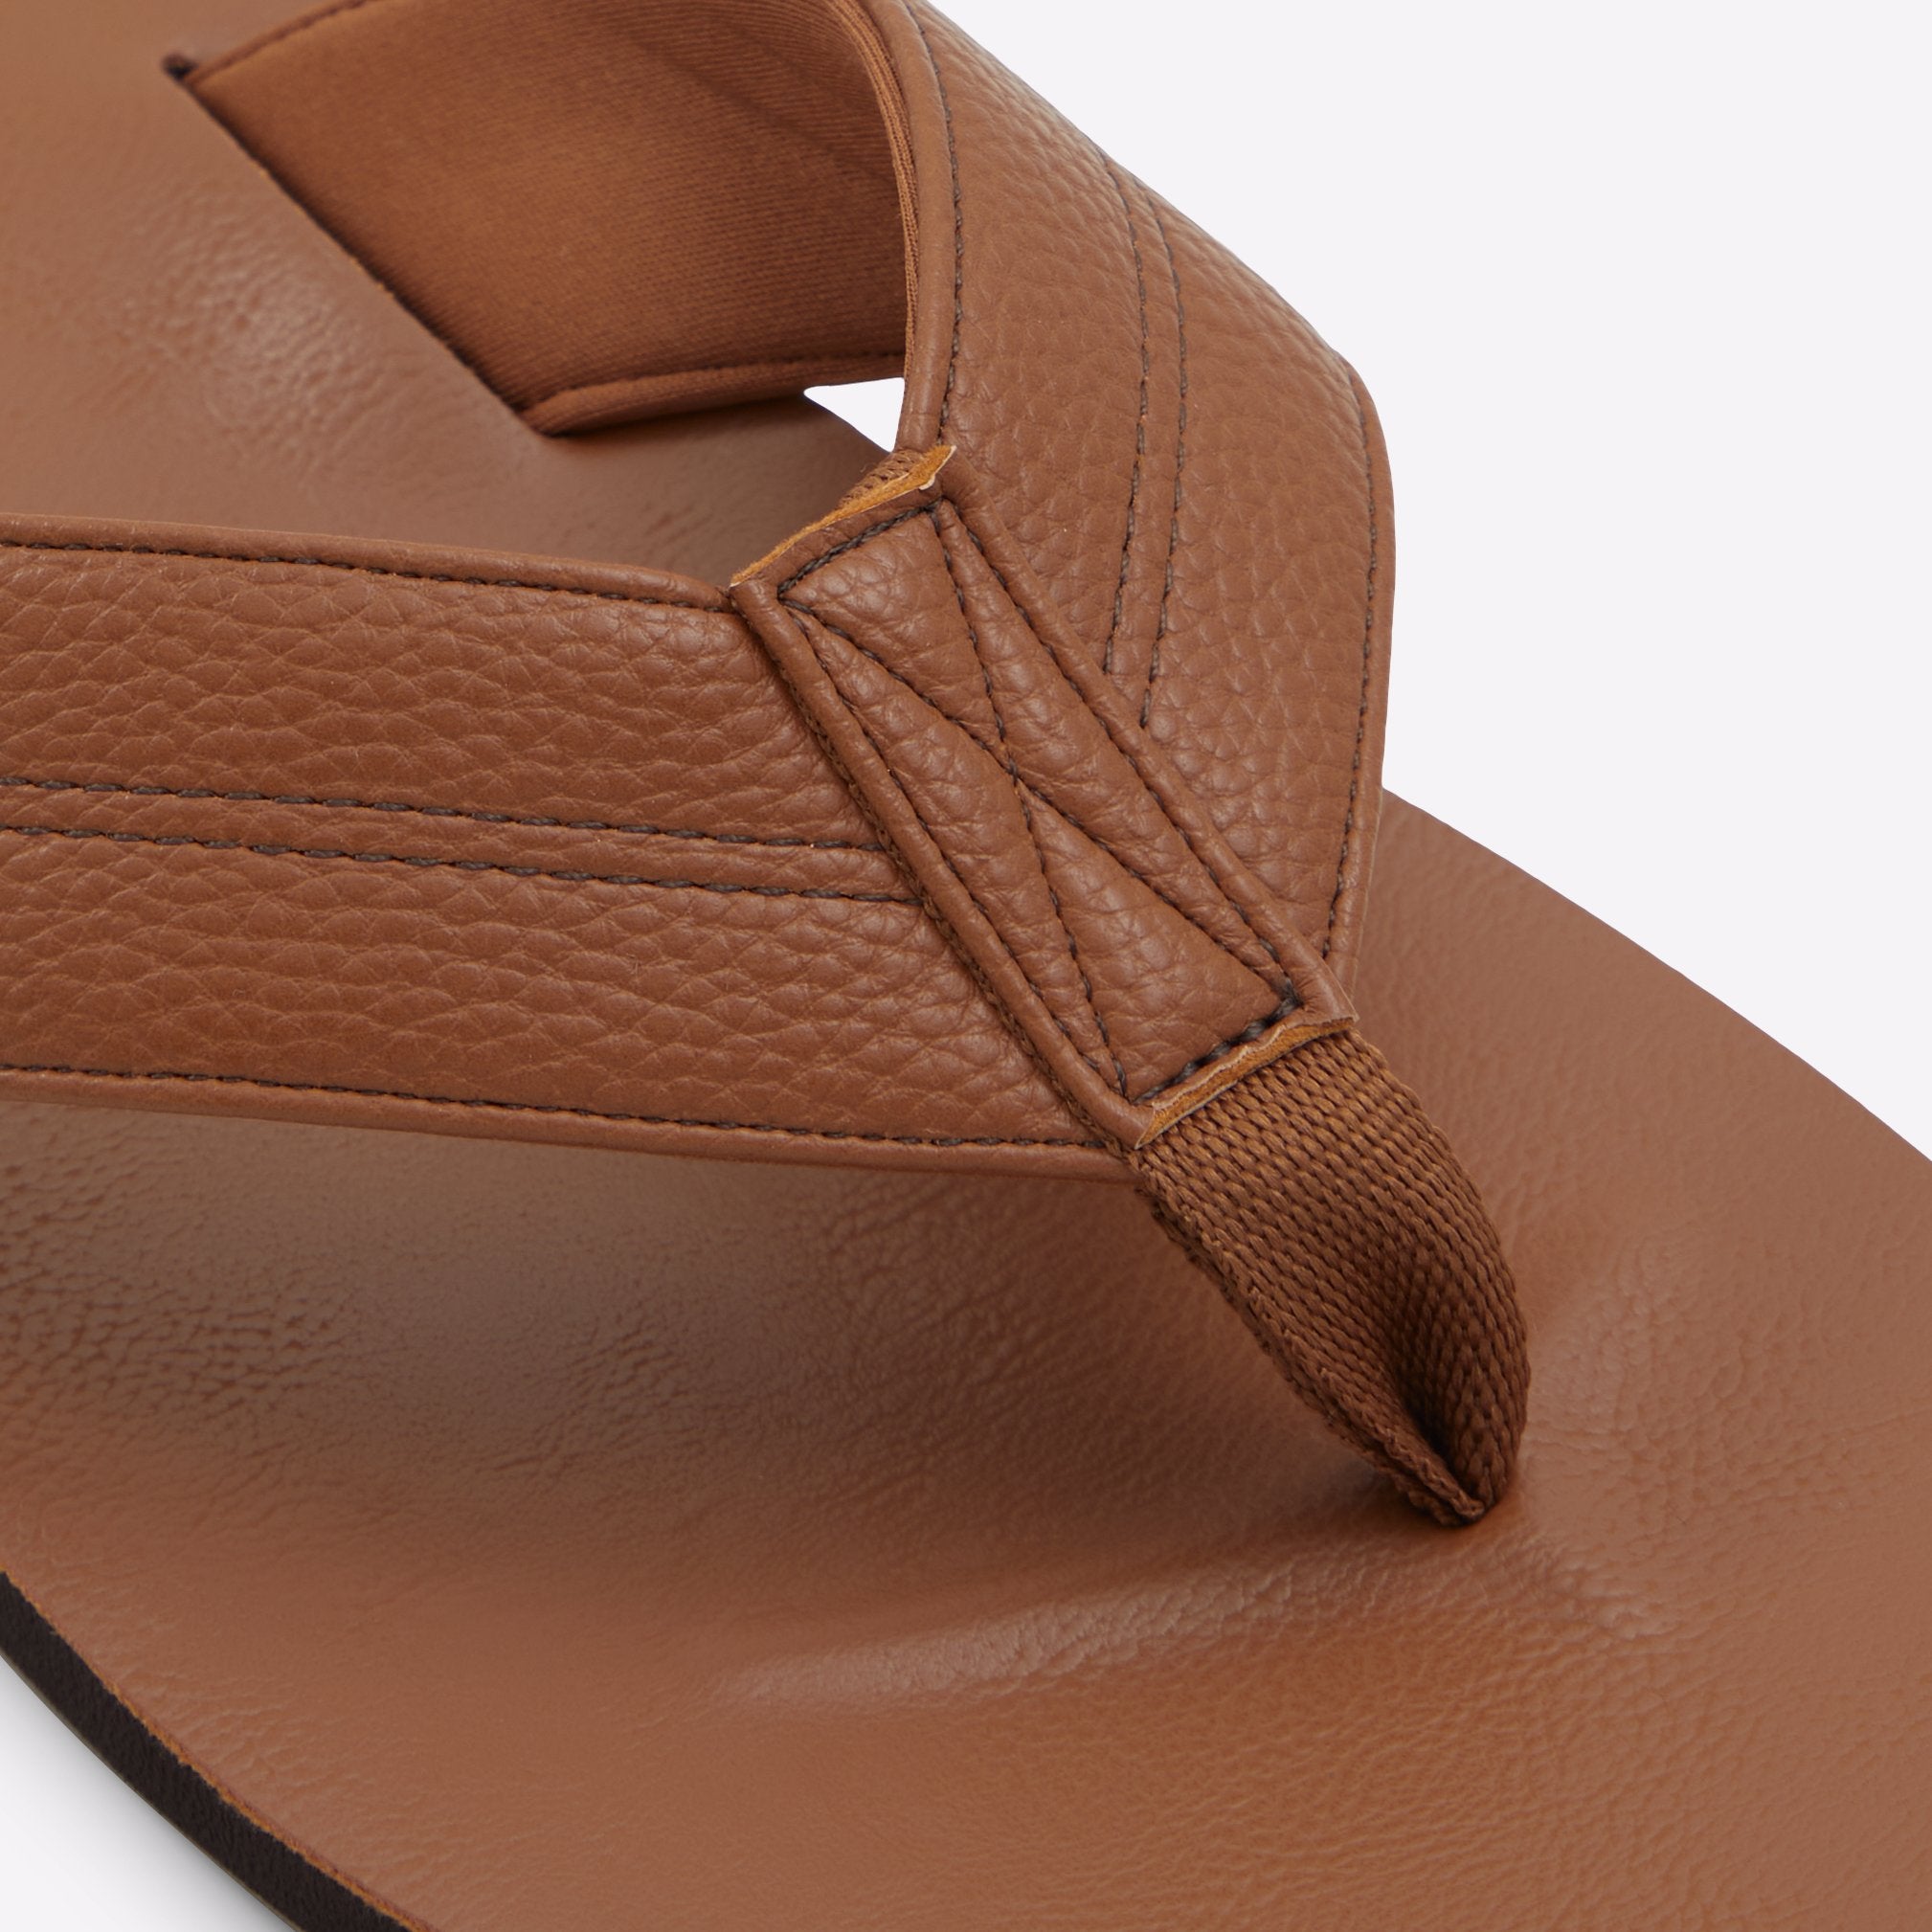 Tribord / Flat Sandals